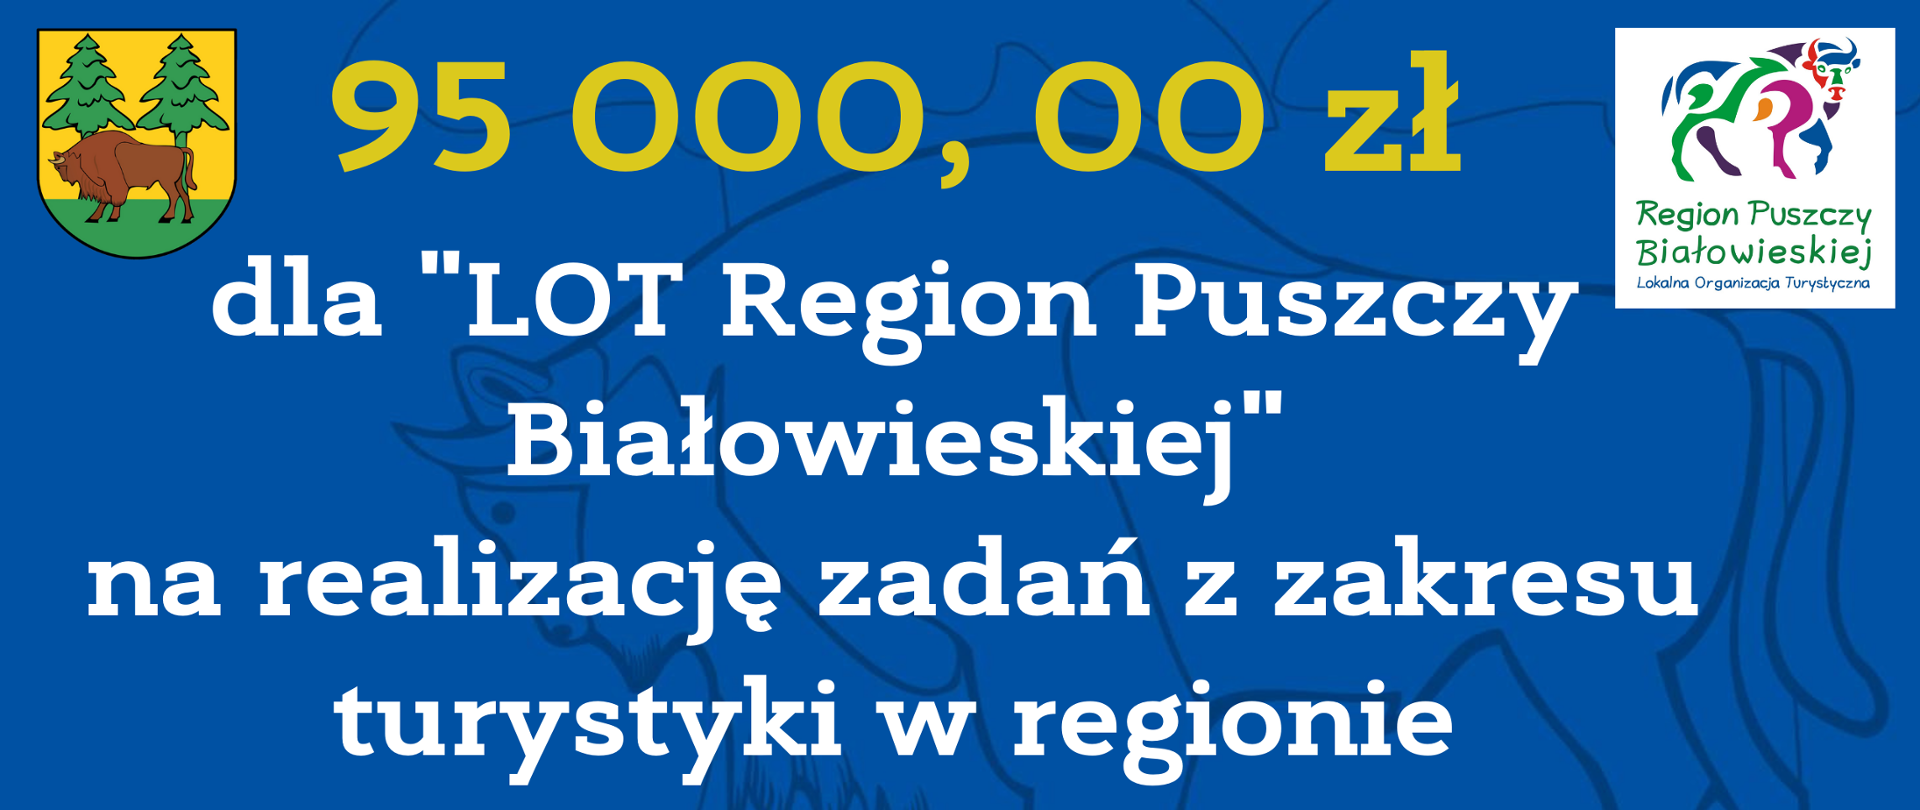 95 000, 00 zł dla "LOT Region Puszczy Białowieskiej" na realizację zadań z zakresu turystyki w regionie